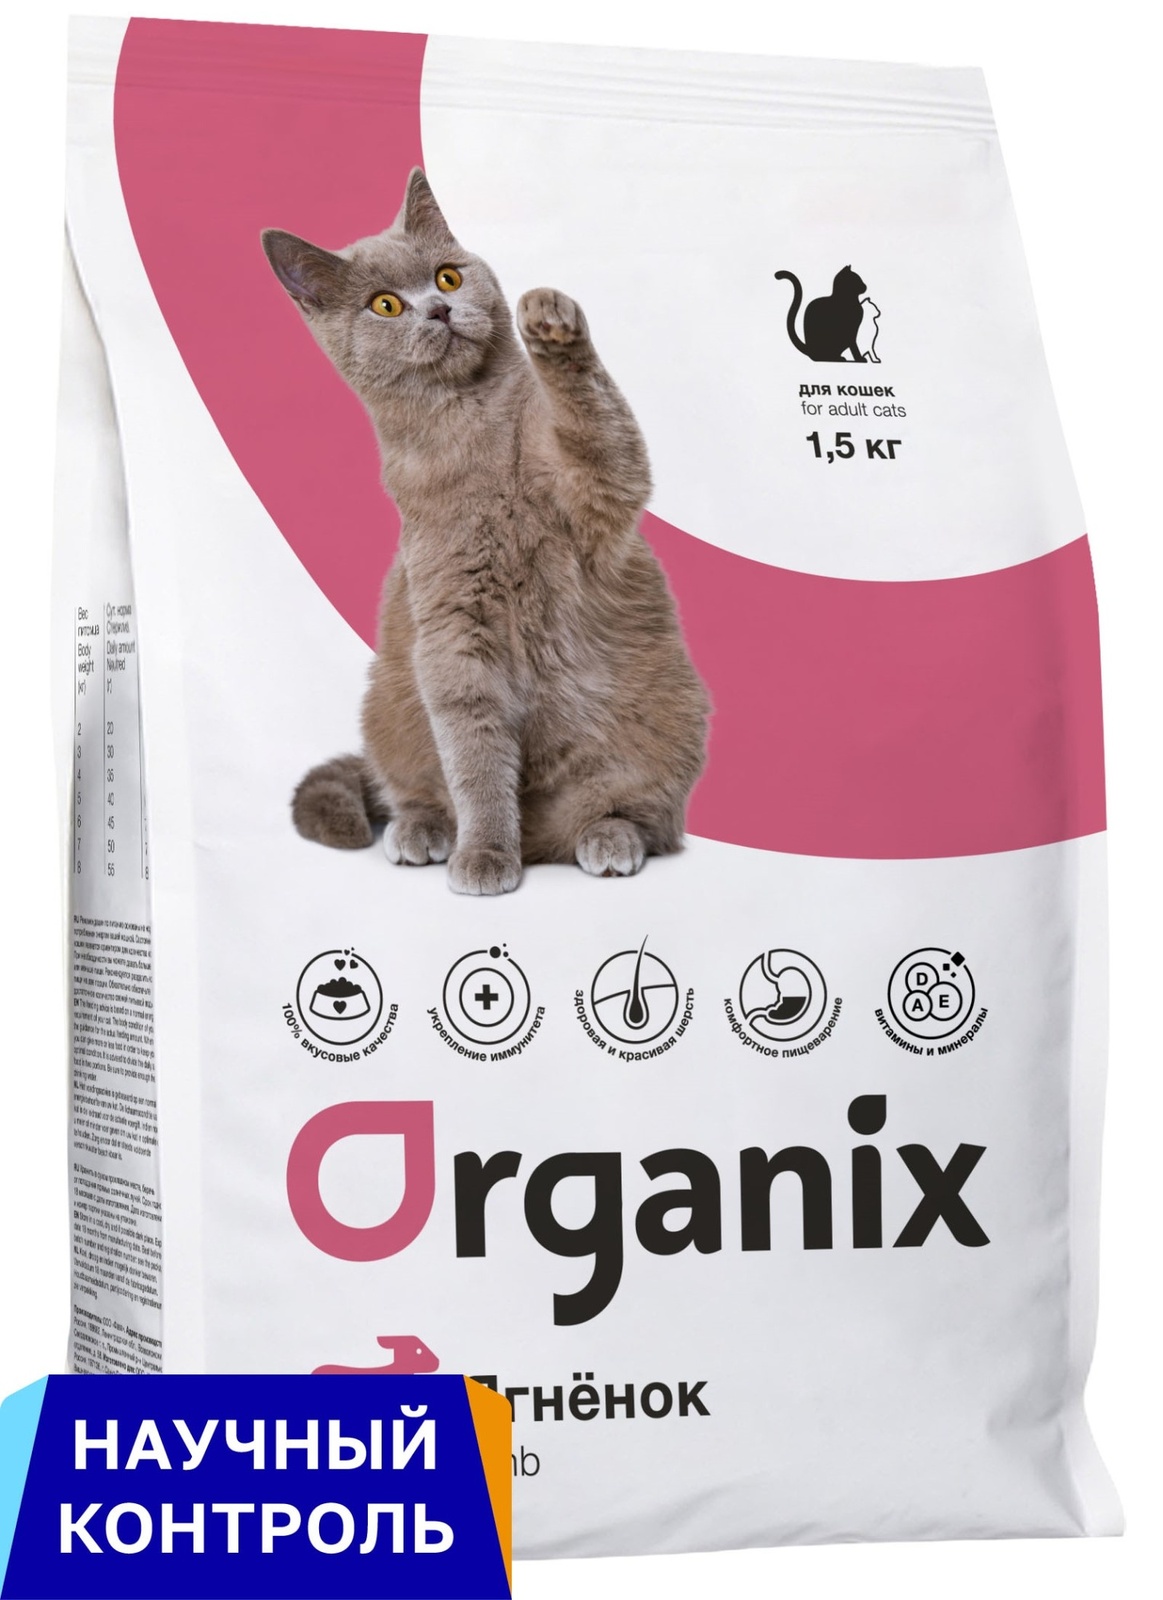 Organix Organix полнорационный сухой корм для взрослых кошек с ягненком и цельным рисом (1,5 кг) organix organix сухой корм для кошек с курочкой 7 5 кг